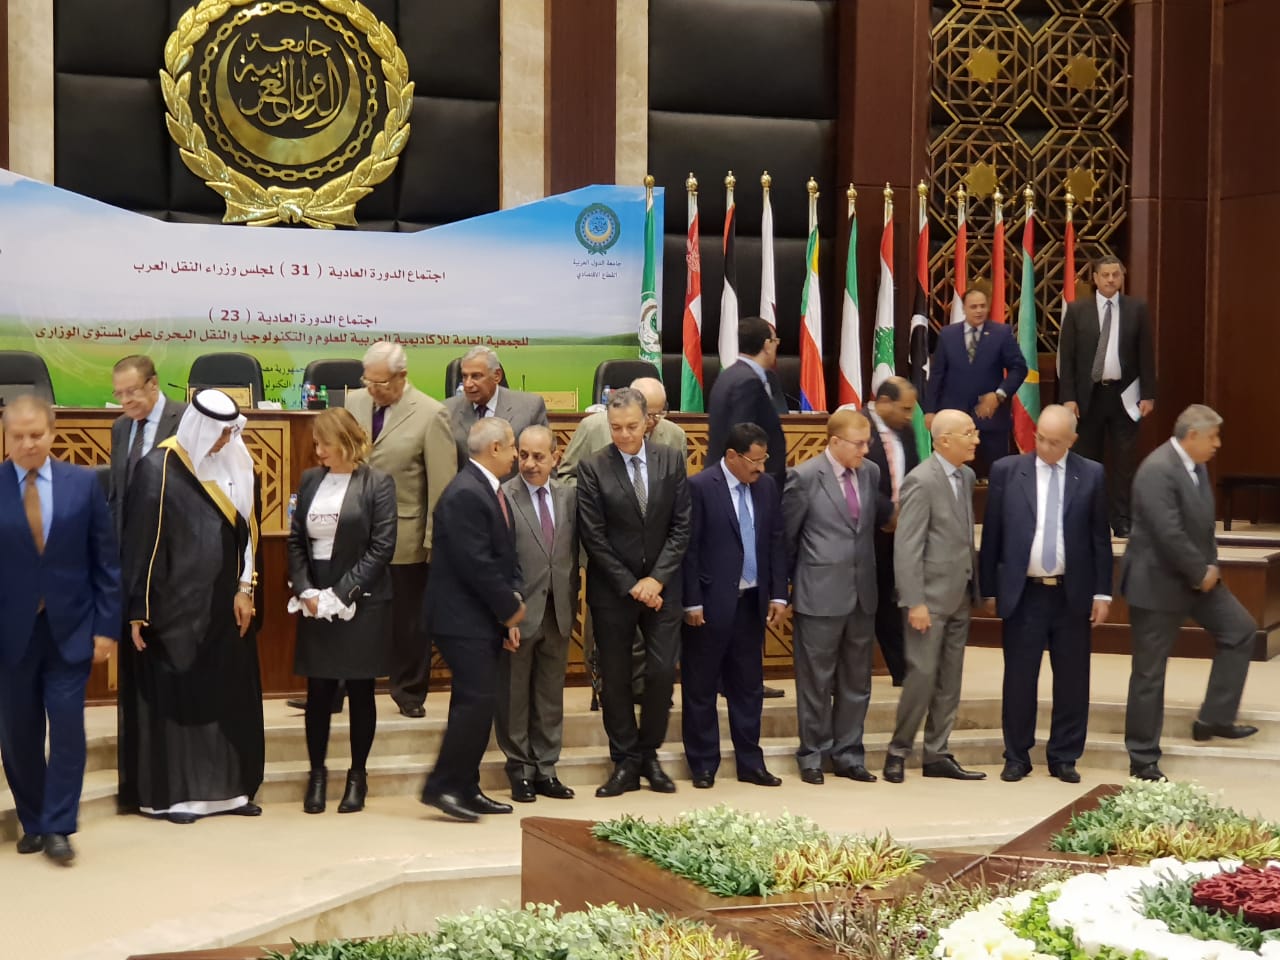  وزير النقل يفتتح  فعاليات اجتماع مجلس وزراء النقل العرب بمقر الأكاديمية العربية (1)